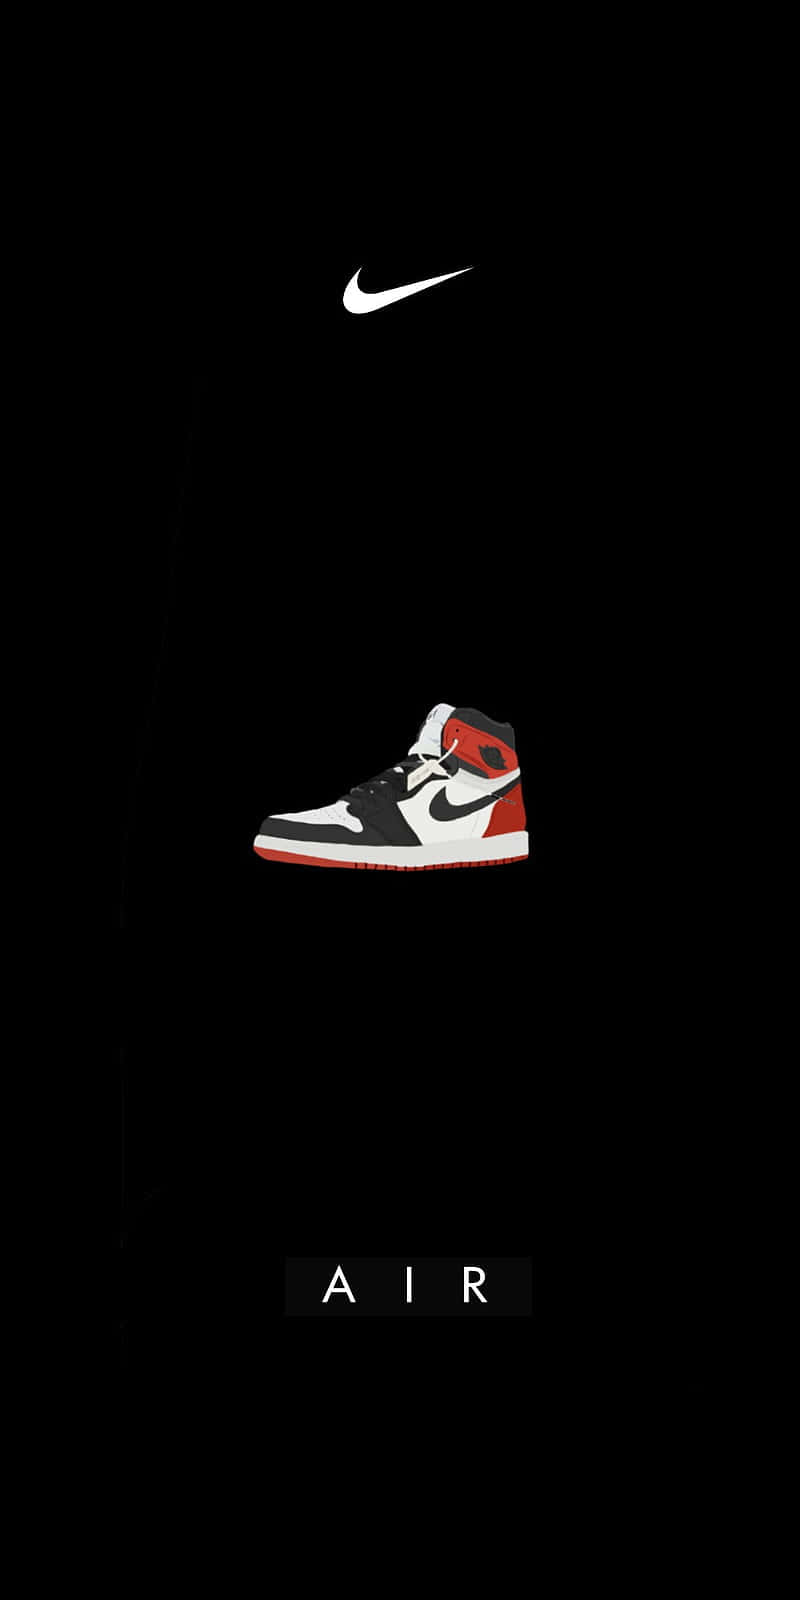 Revisael Calzado Nike Jordan Air 1 Fondo de pantalla